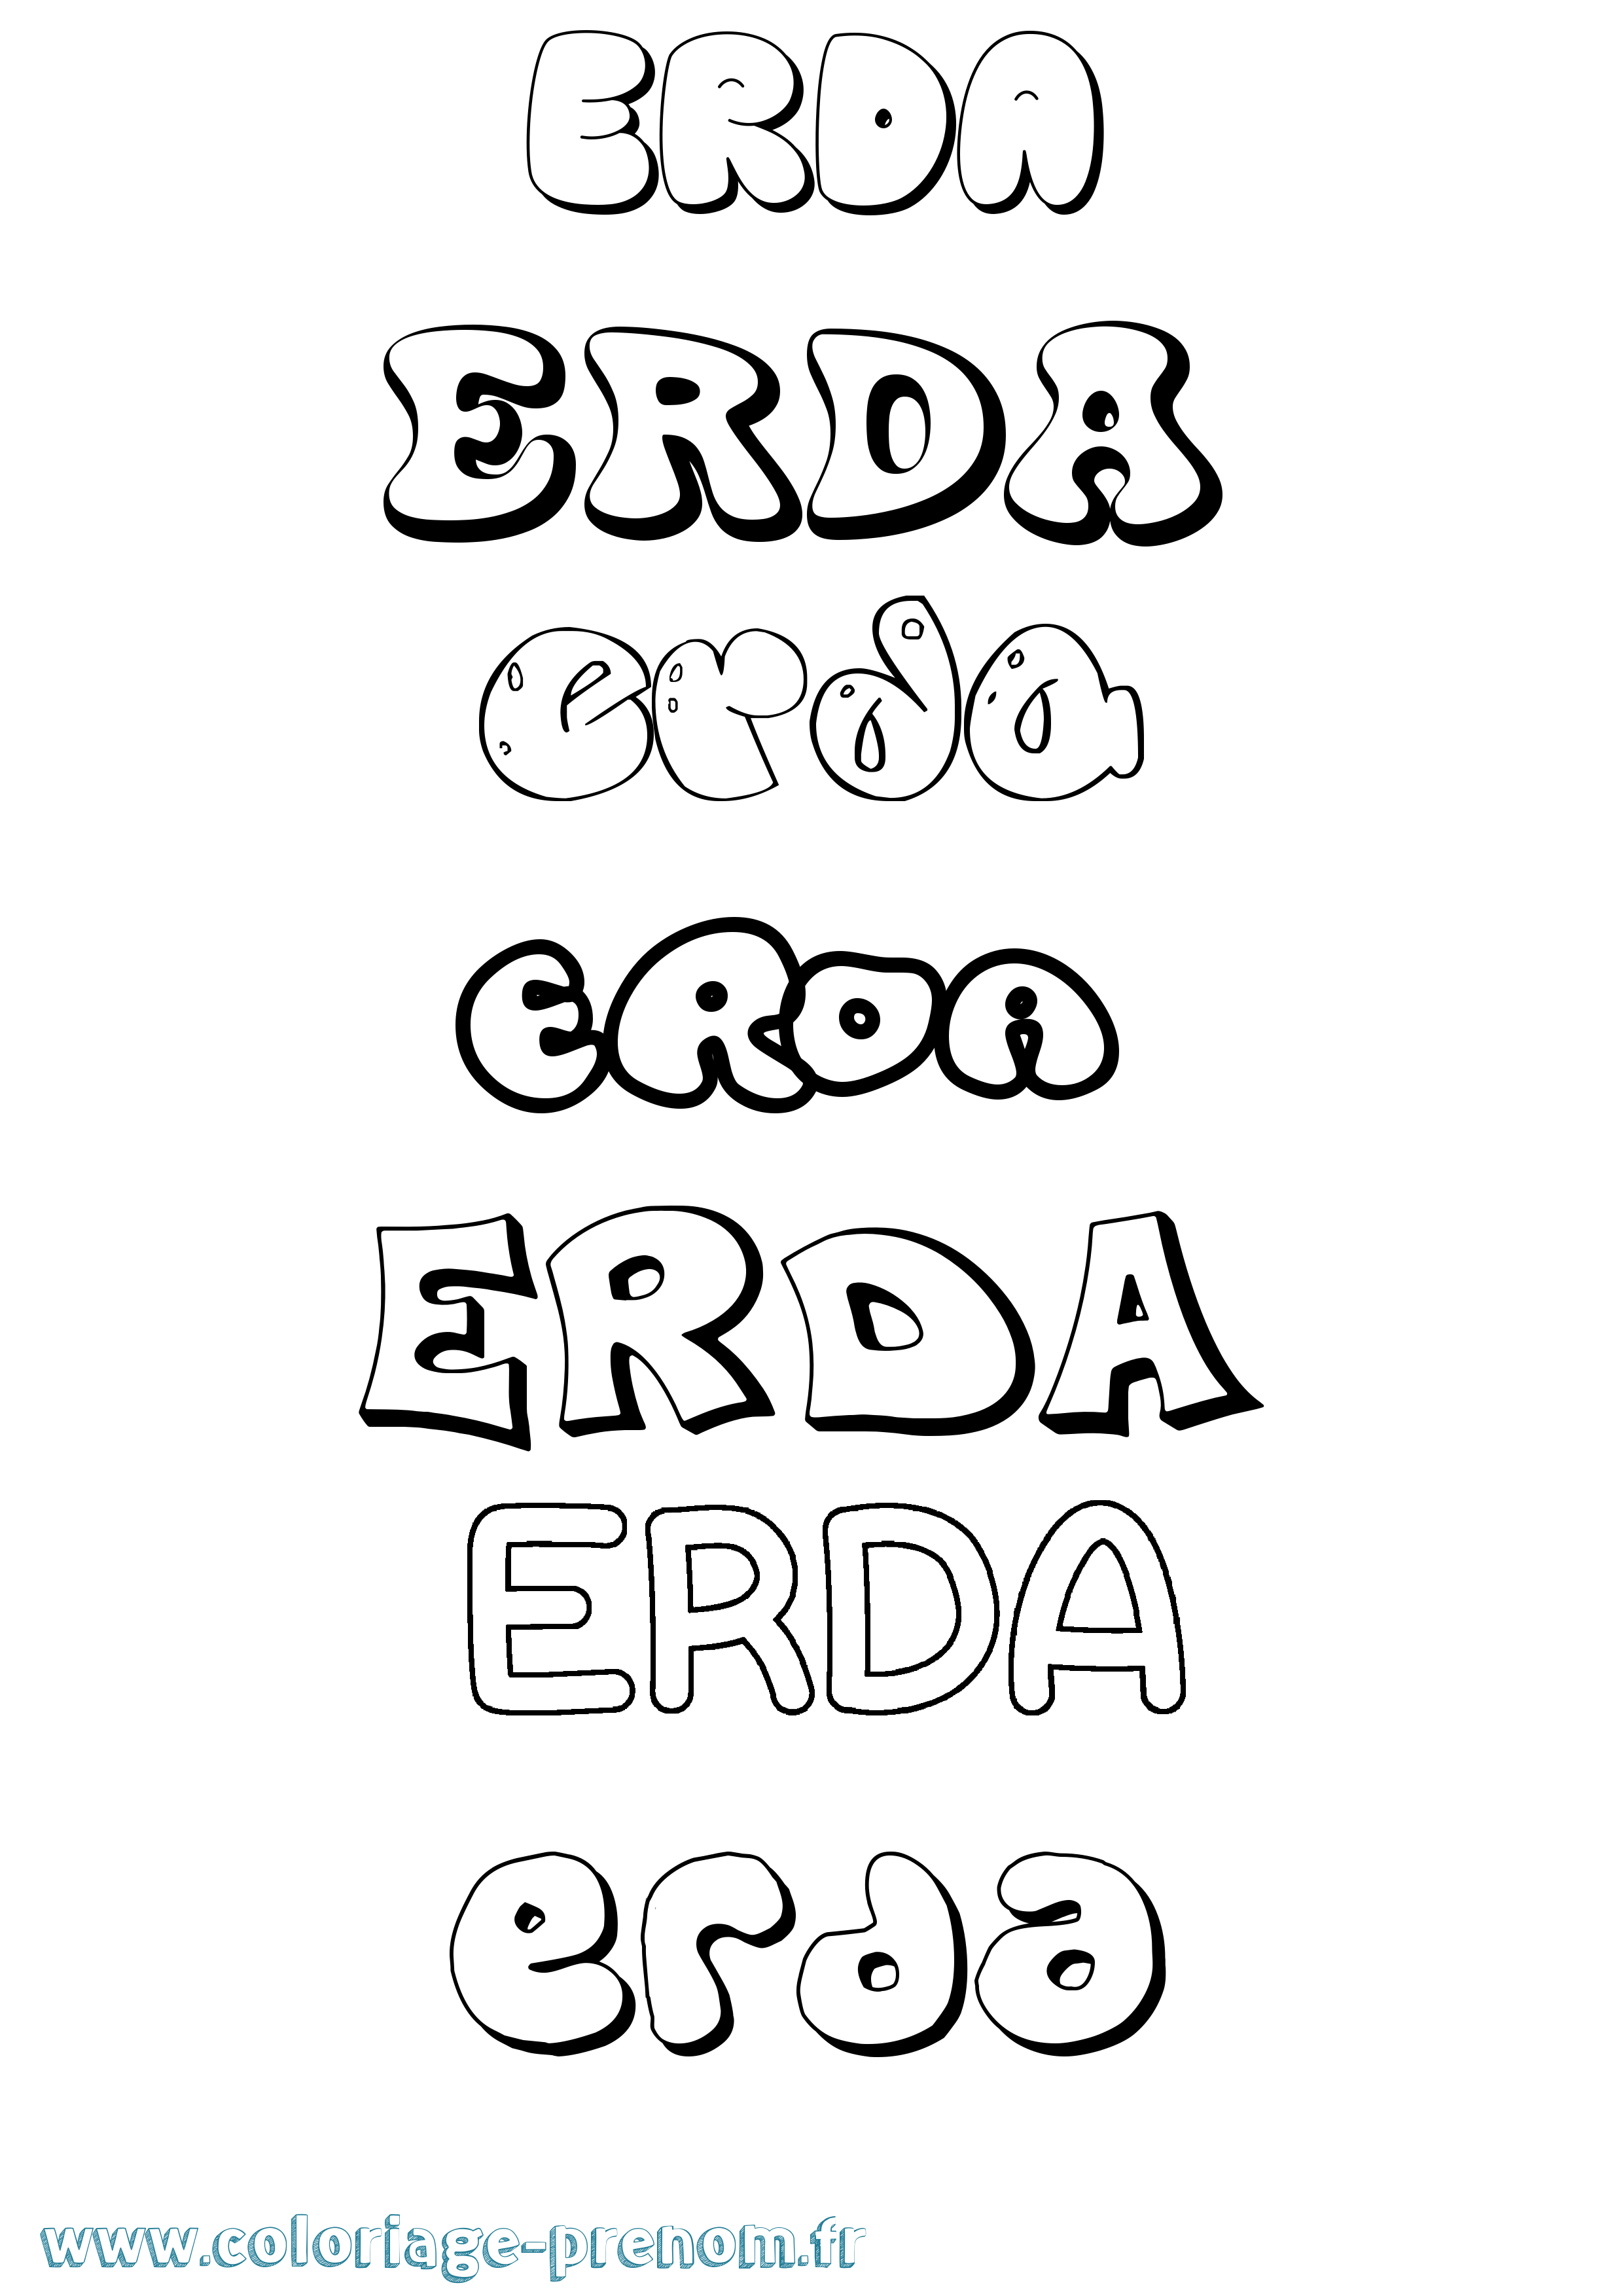 Coloriage prénom Erda Bubble